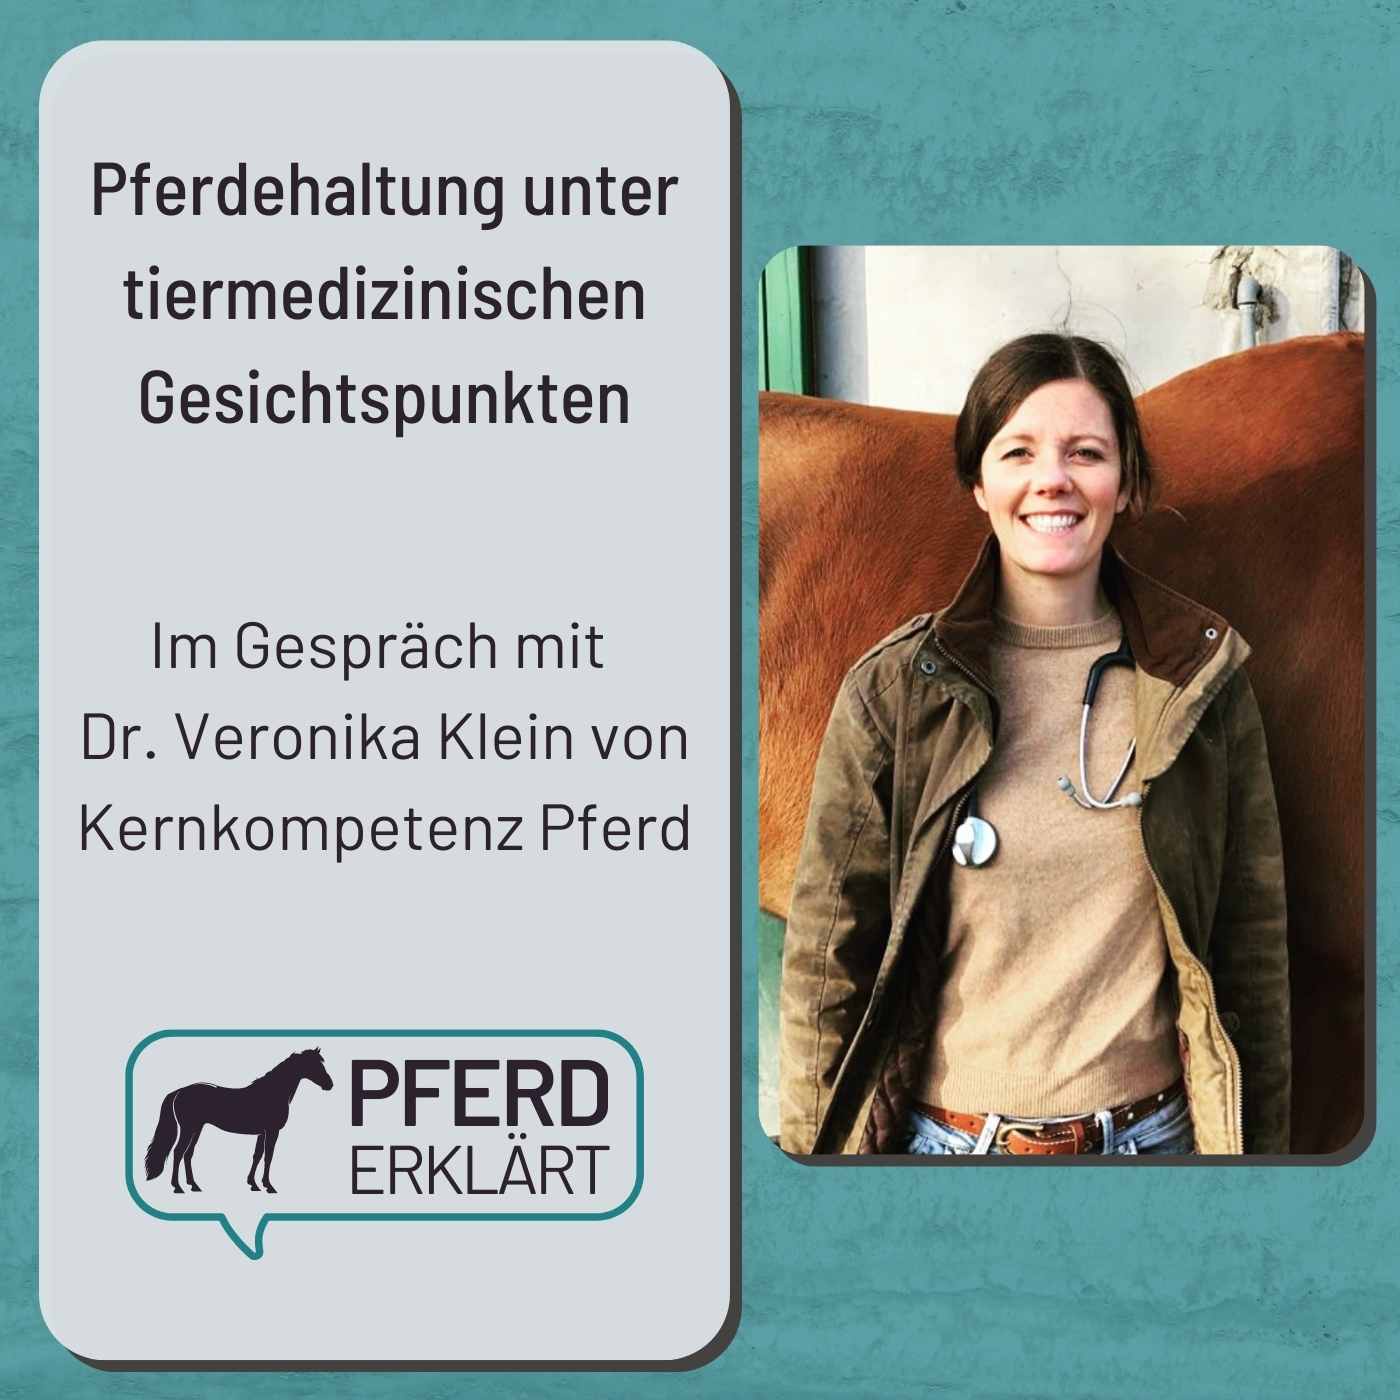 Pferdehaltung aus tiermedizinischer Sicht: Im Gespräch mit Dr. Veronika Klein von Kernkompetenz Pferd